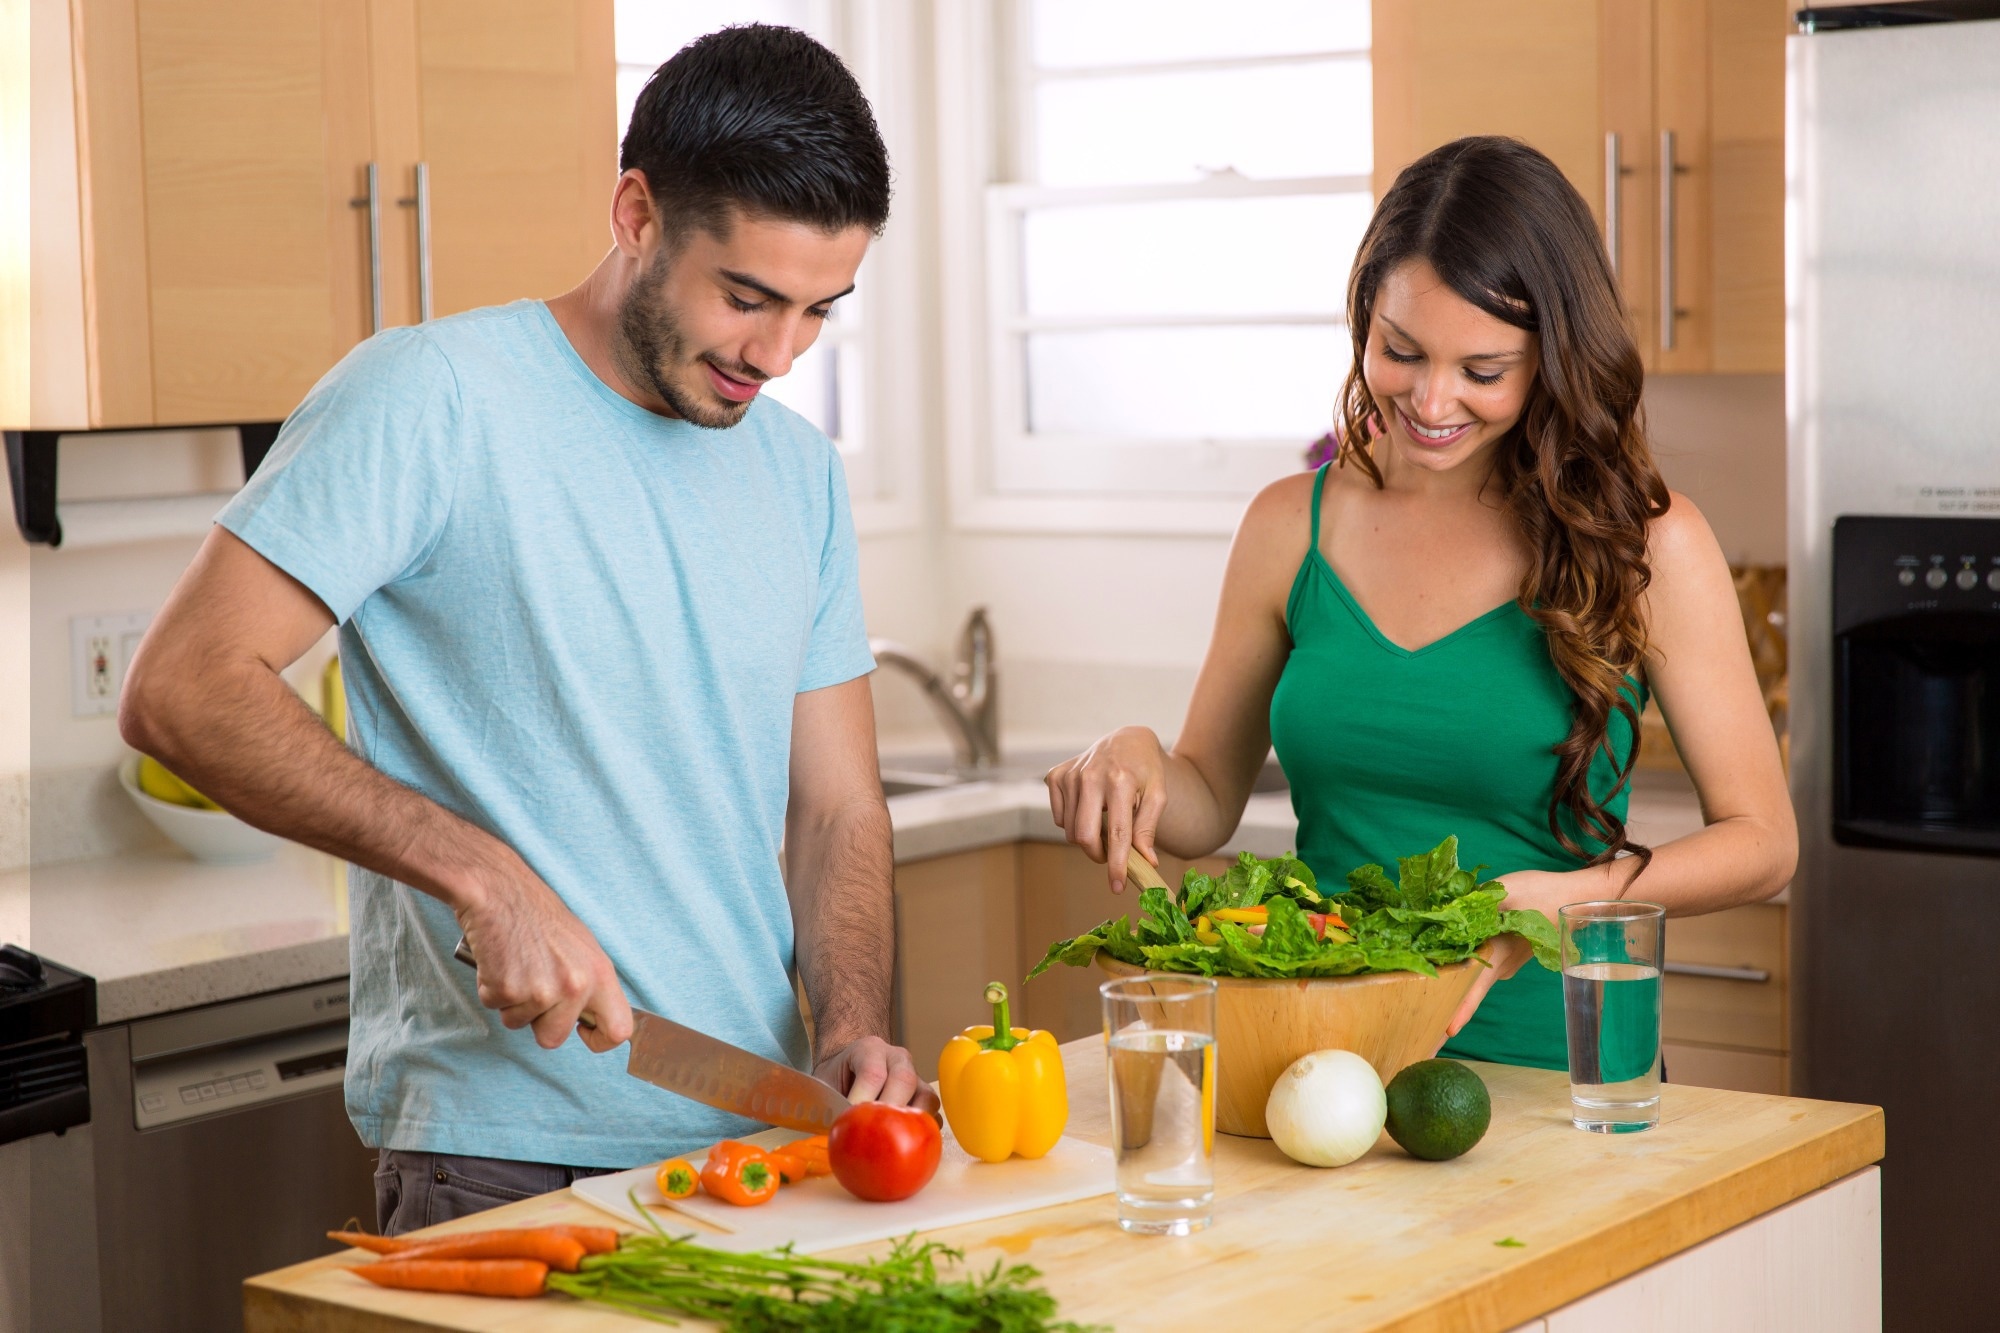 Badanie: Zdrowe zachowania żywieniowe par przyczyniają się do mniejszego przyrostu masy ciała w czasie ciąży.  Źródło zdjęcia: El Nariz / Shutterstock